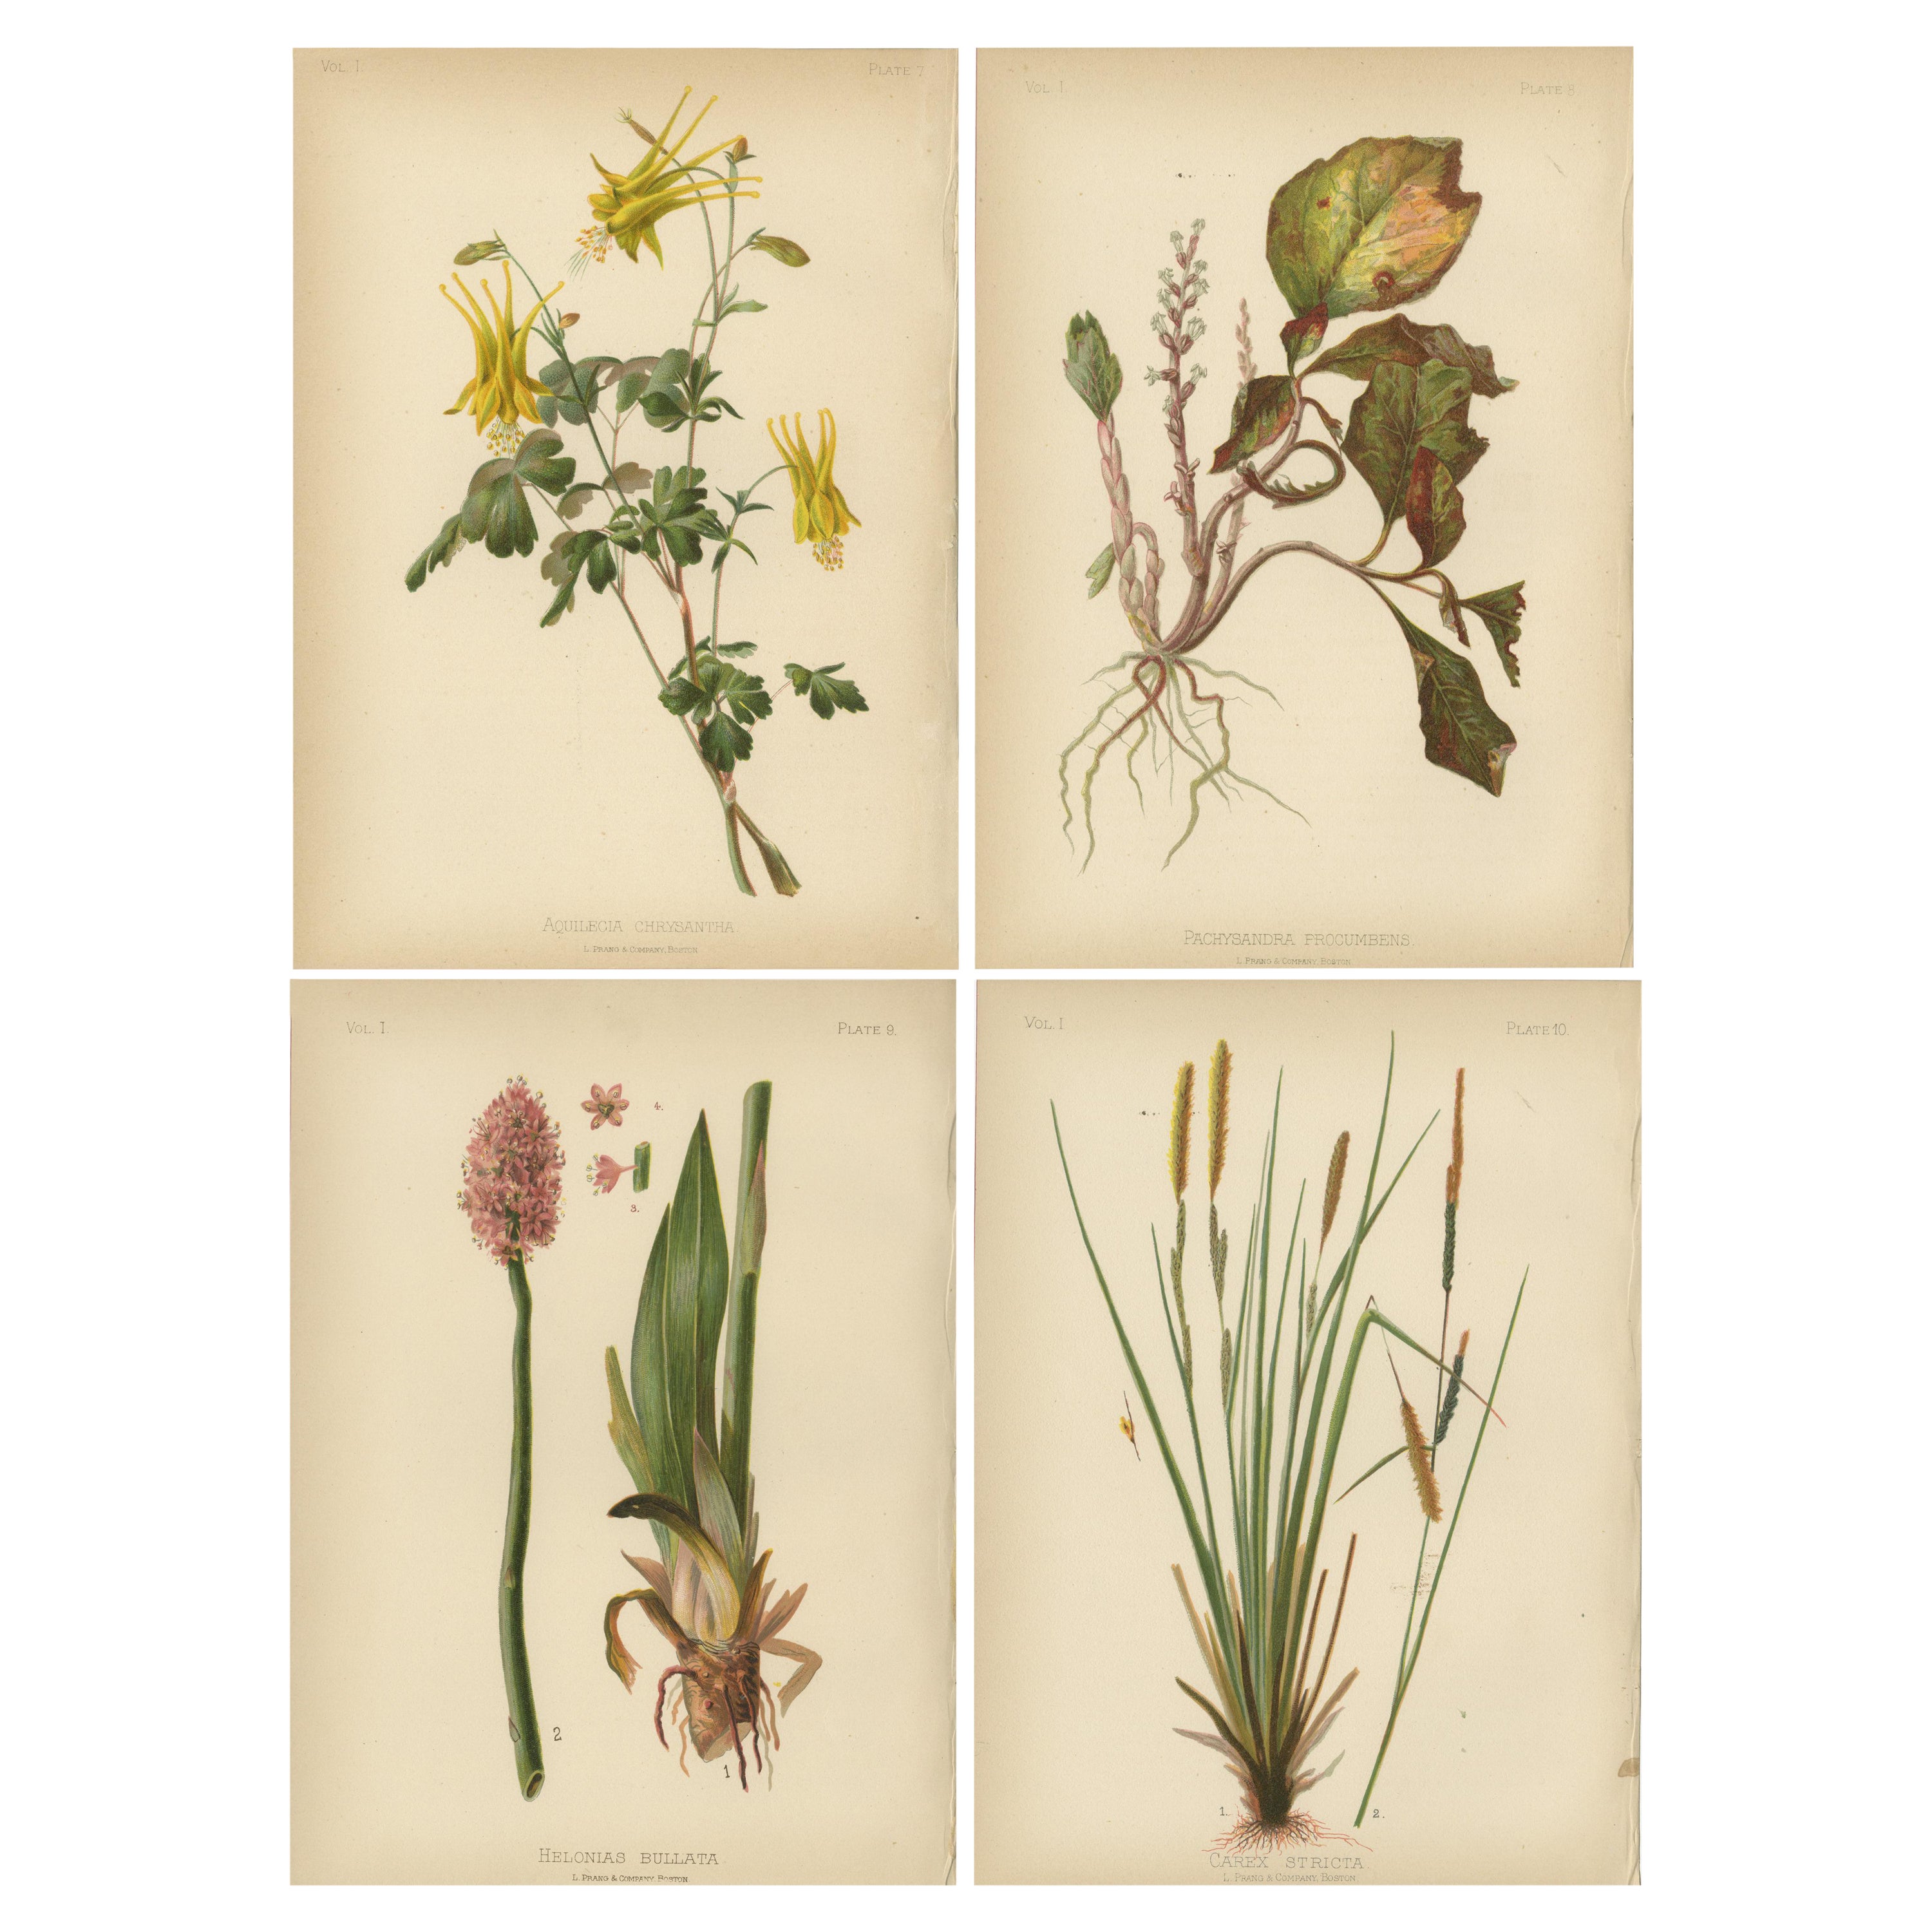 Flora der amerikanischen Ureinwohner der USA – vier originale botanische Chromolithograps, 1879